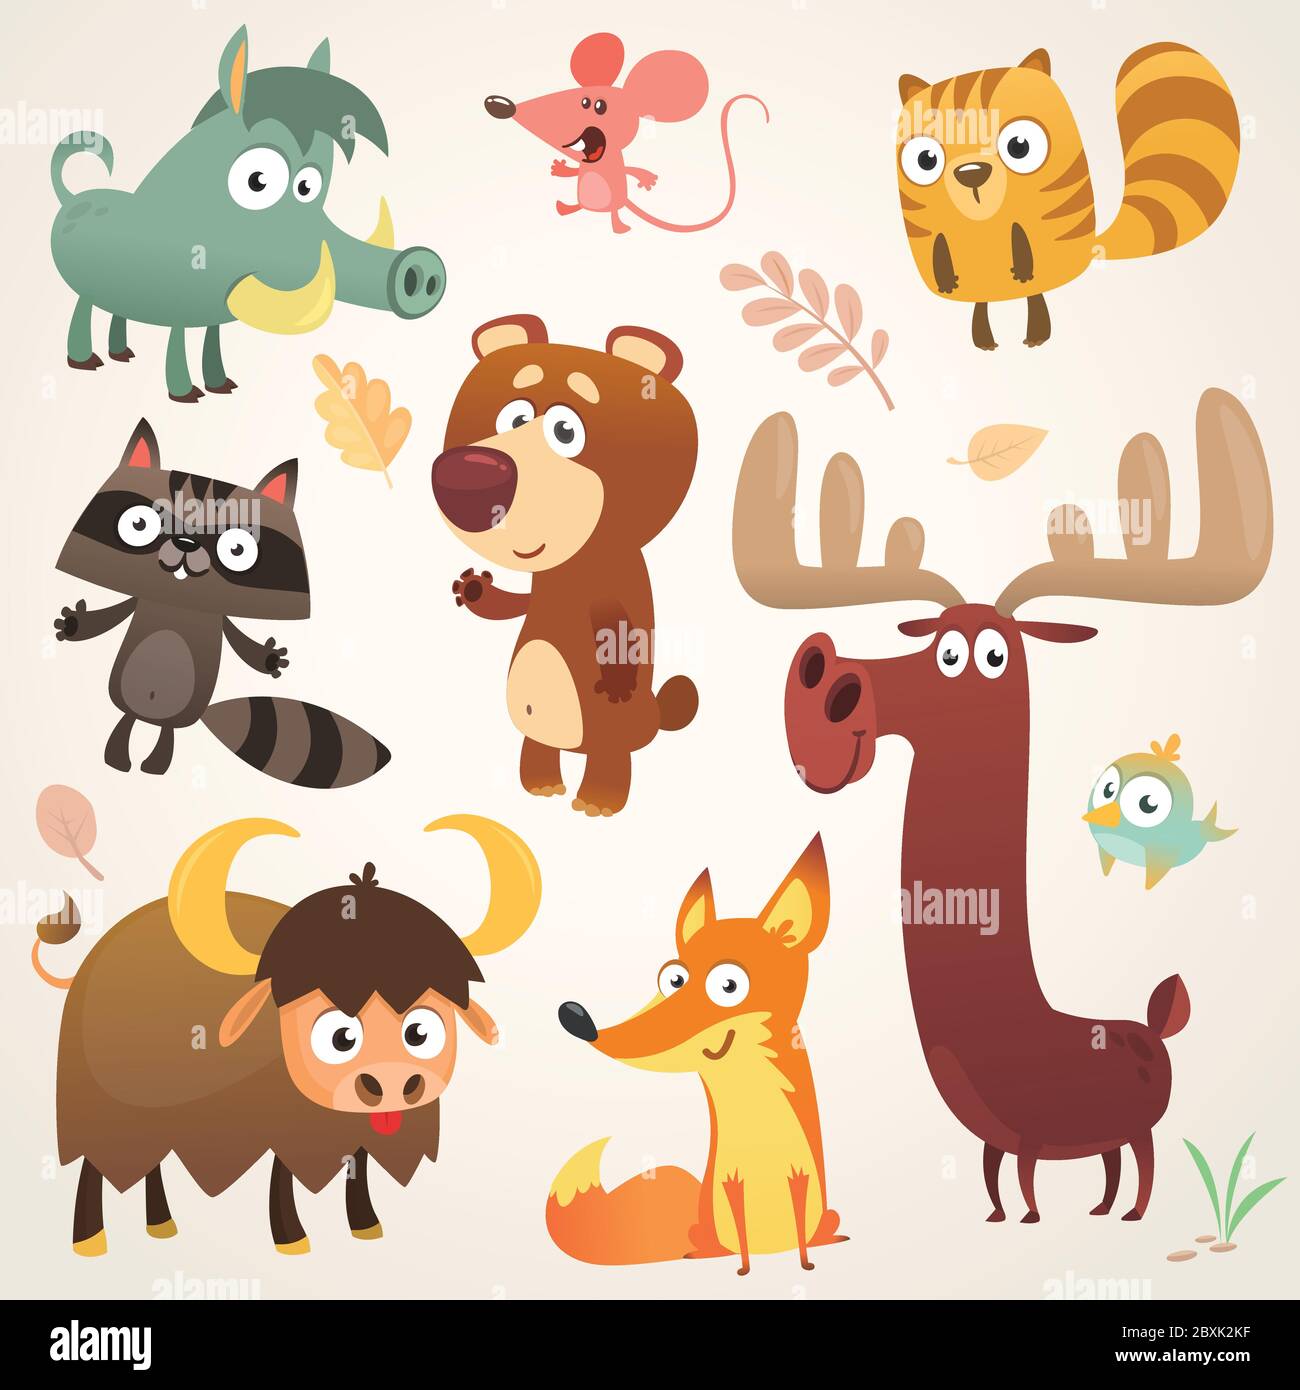 Cartoon Wald Tier Charaktere. Vektorgrafik. Große Reihe von Cartoon Wald Tiere Illustration. Eichhörnchen, Maus, Waschbär, Wildschwein, Fuchs, Büffel, b Stock Vektor